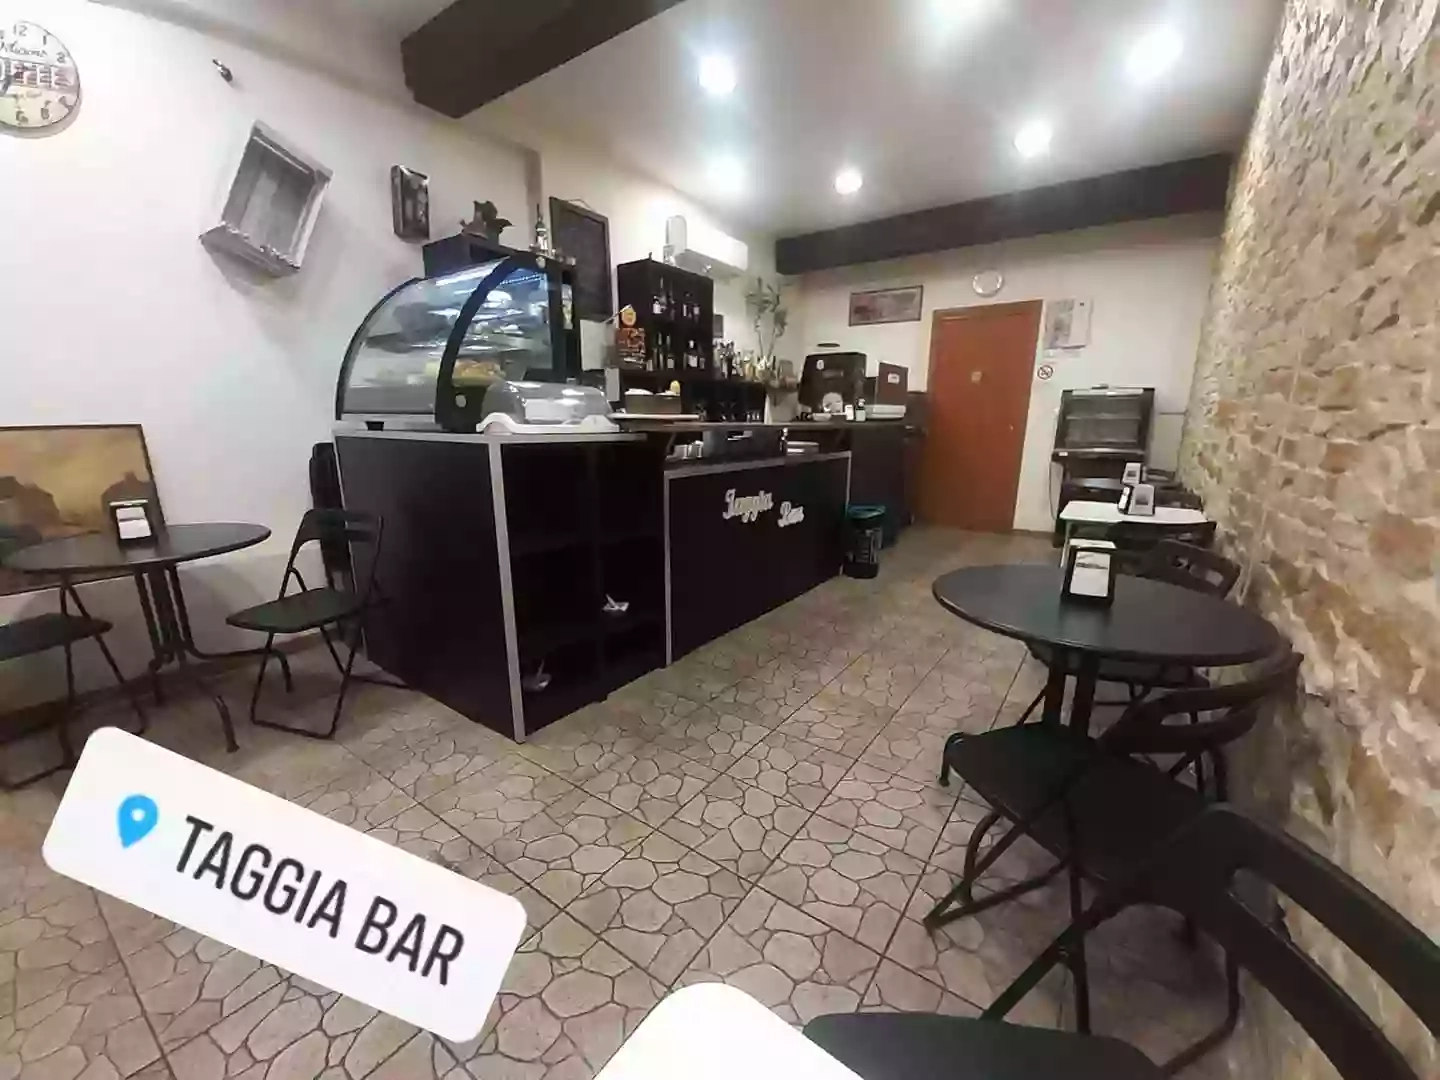 Bar Taggia